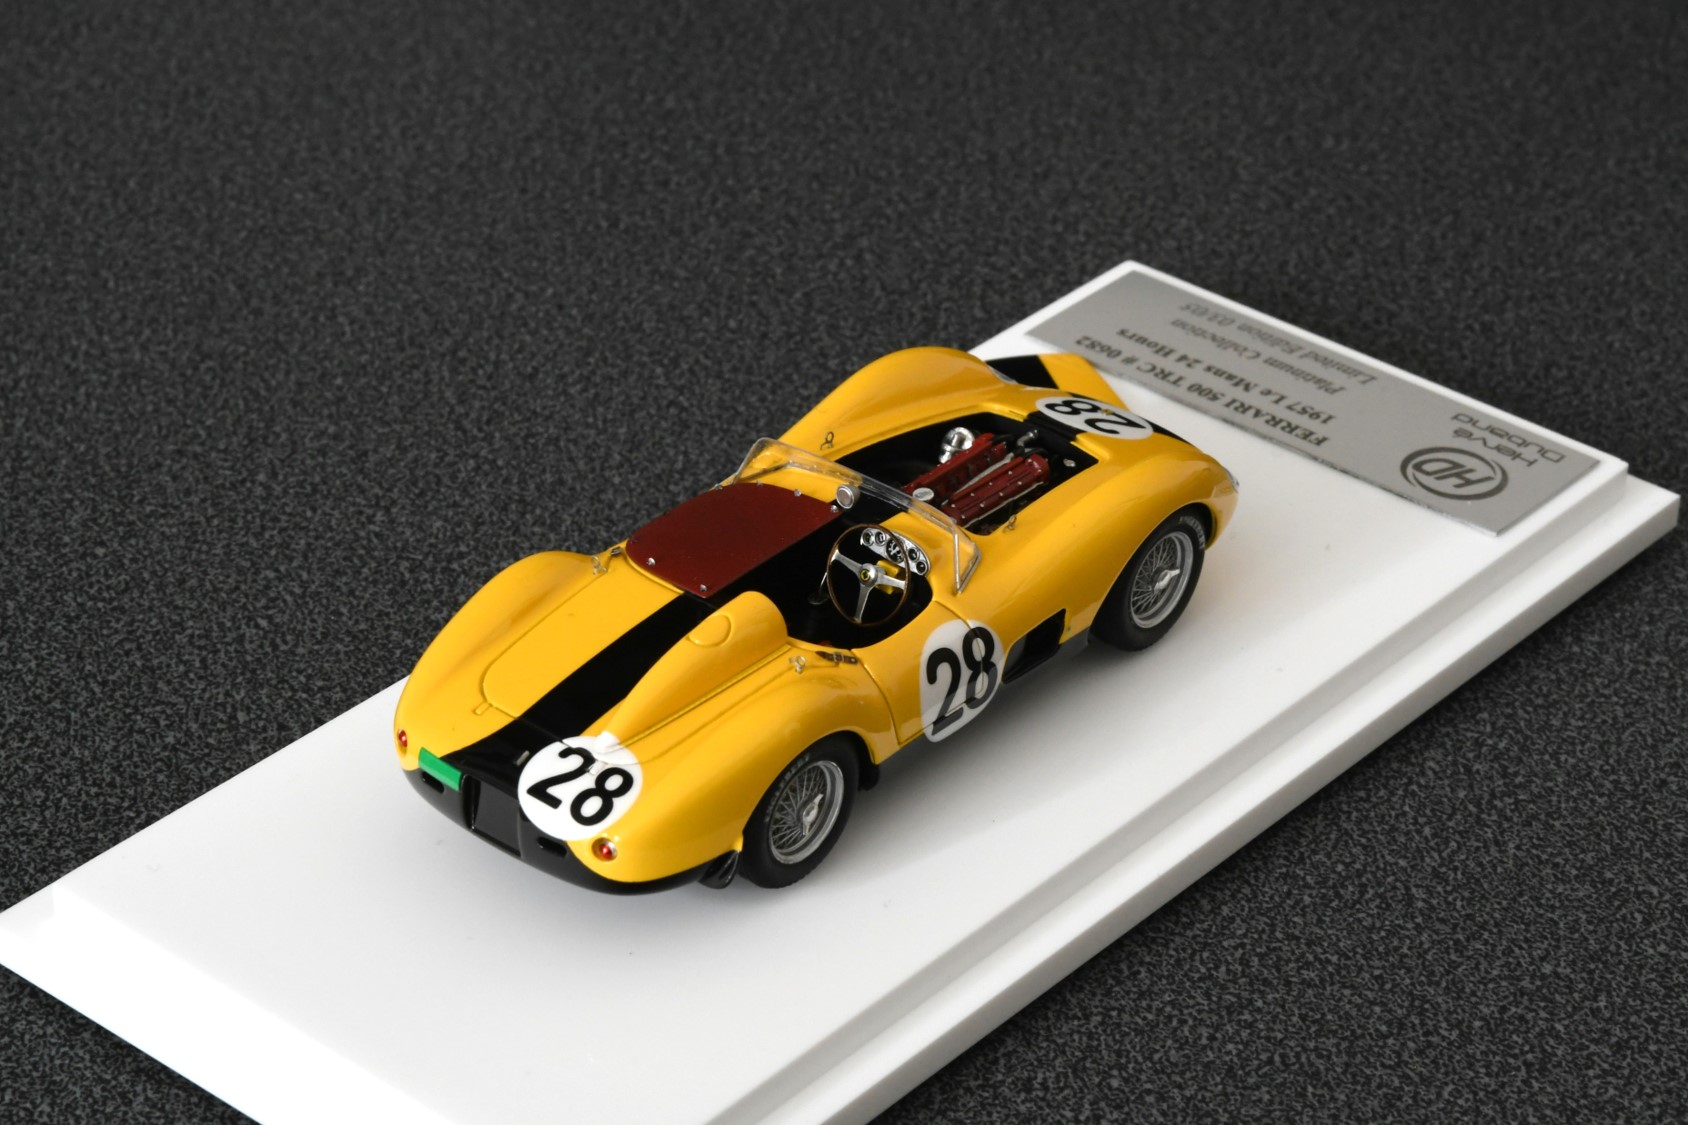 H. Duband : Ferrari 500 TRC platinium collection